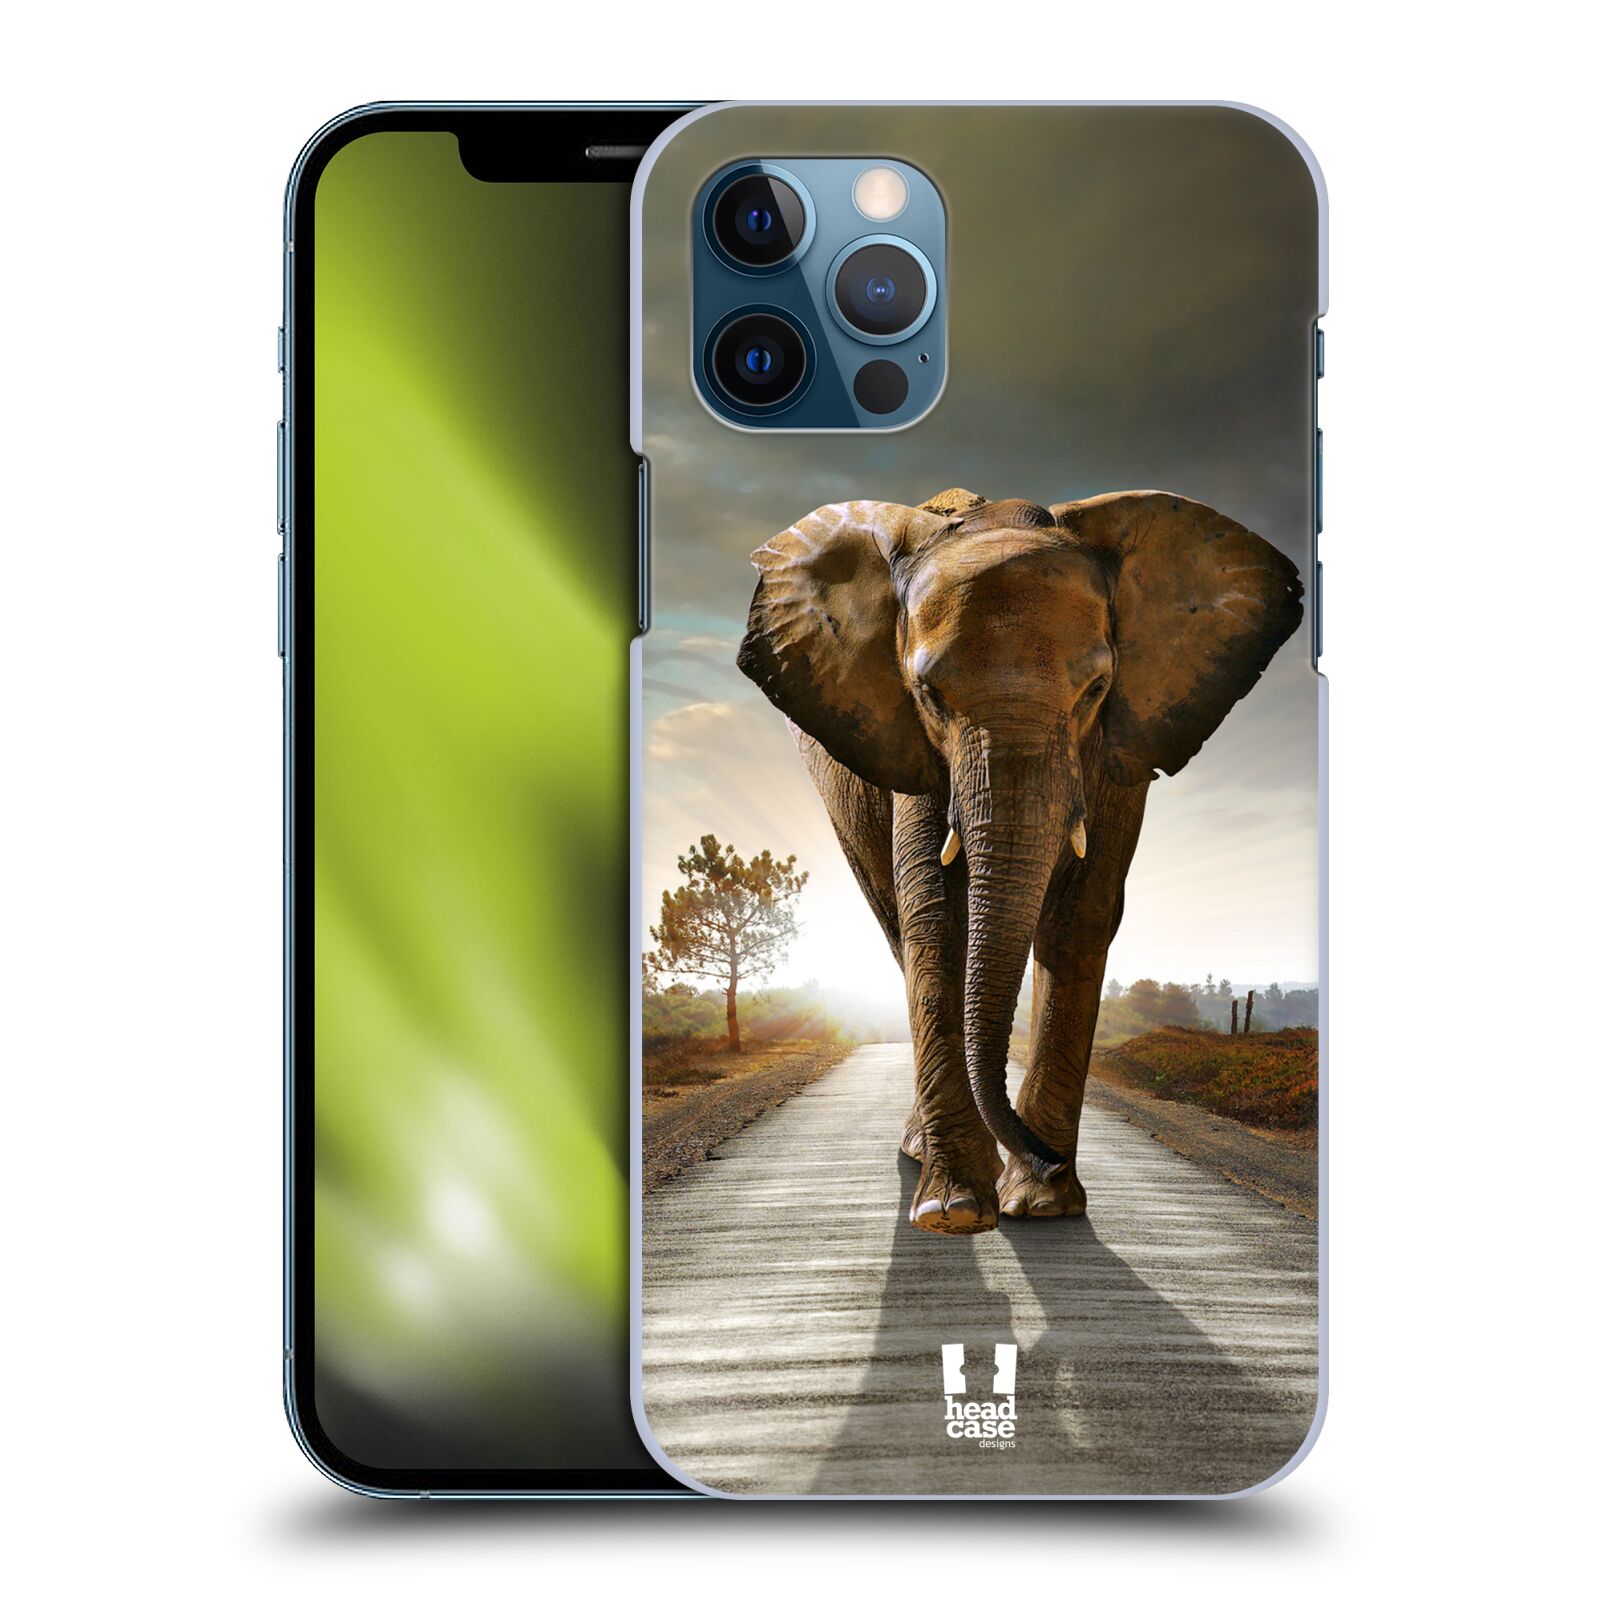 Zadní obal pro mobil Apple iPhone 12 / iPhone 12 Pro - HEAD CASE - Svět zvířat kráčející slon